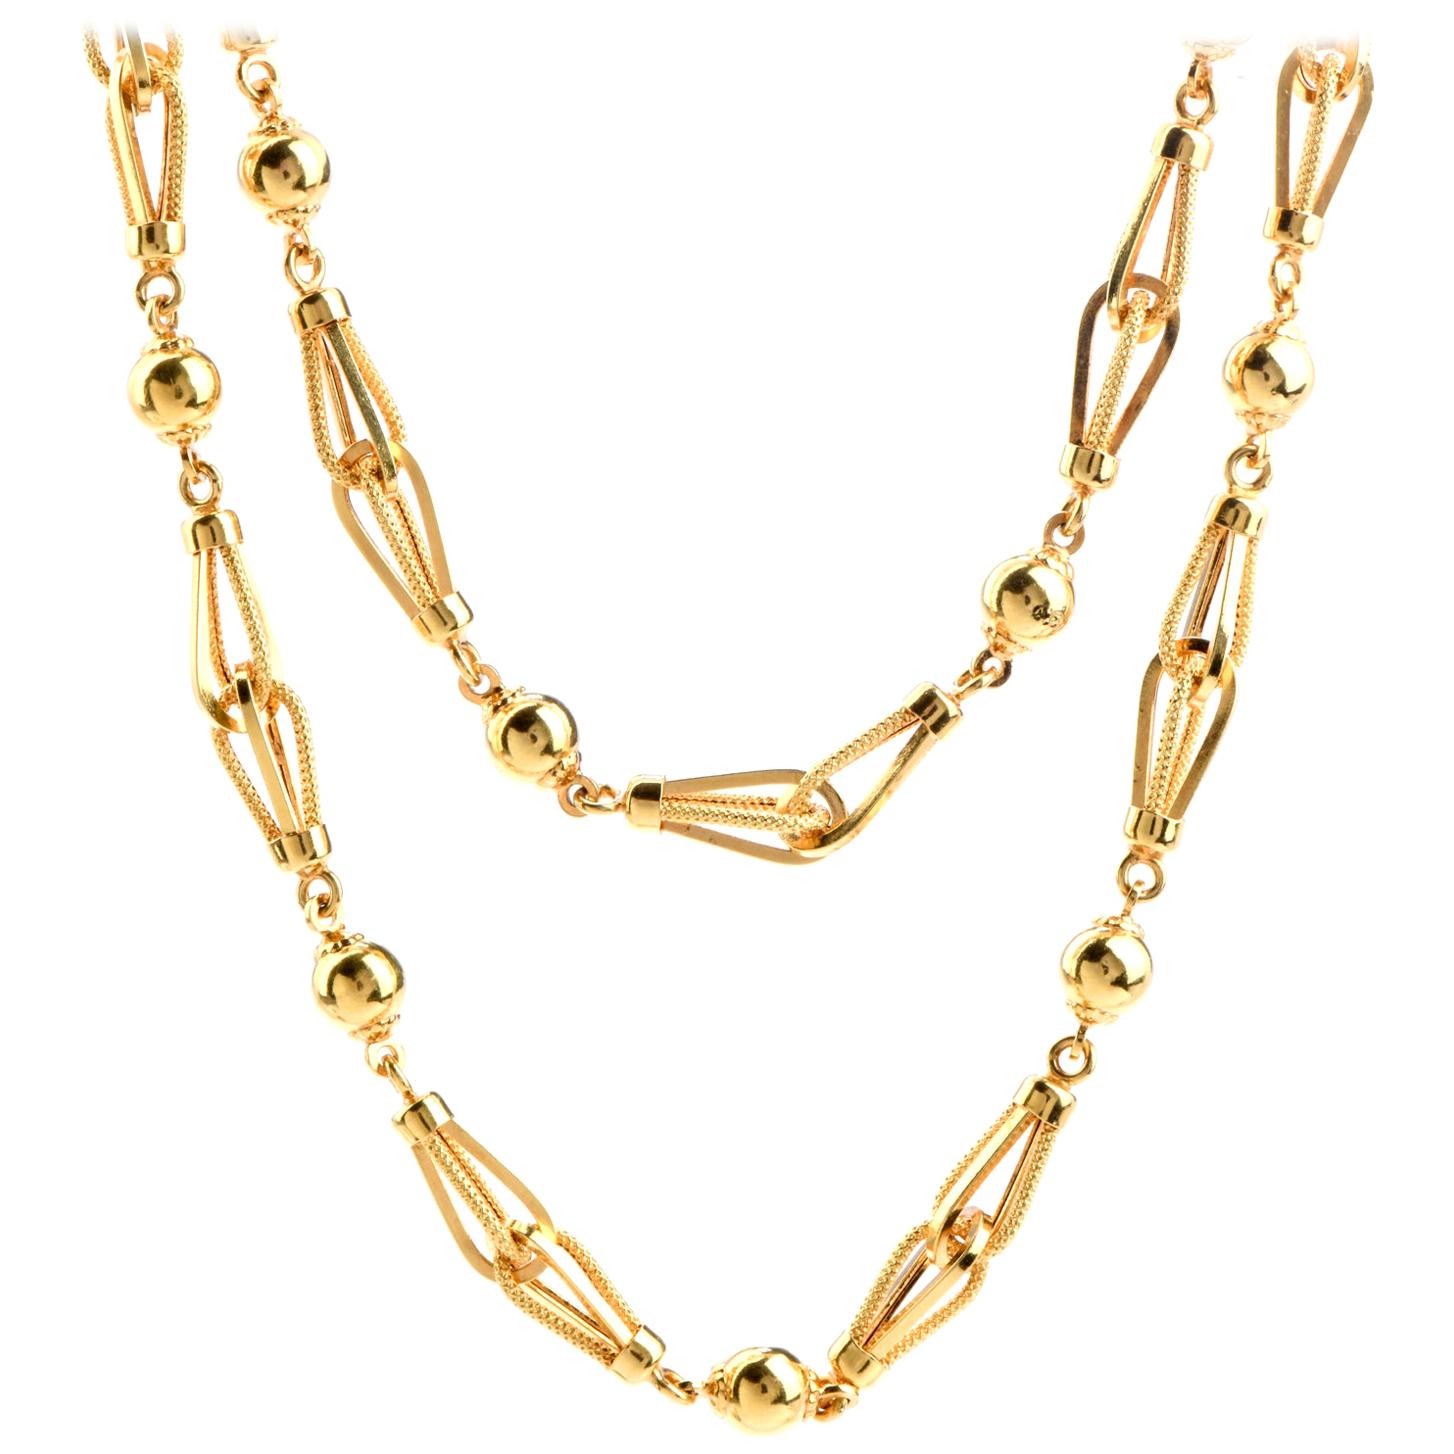 Vintage Retro 18 Karat Gold Long Necklace Chain Necklace